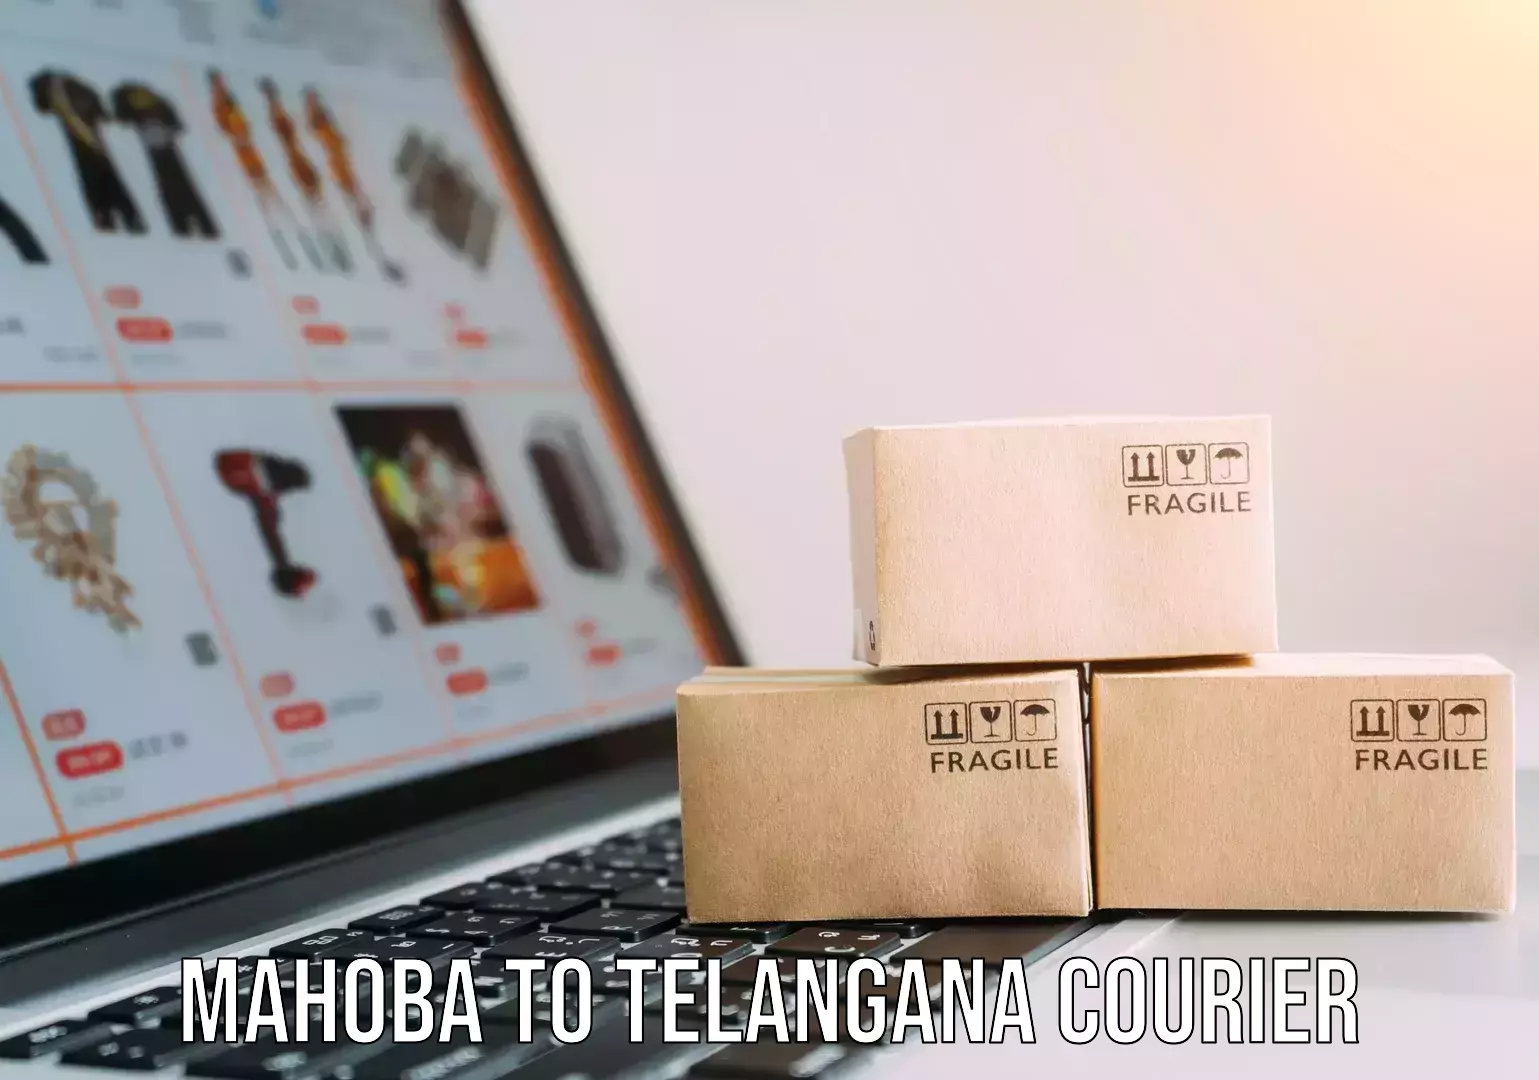 Furniture moving experts Mahoba to Telangana